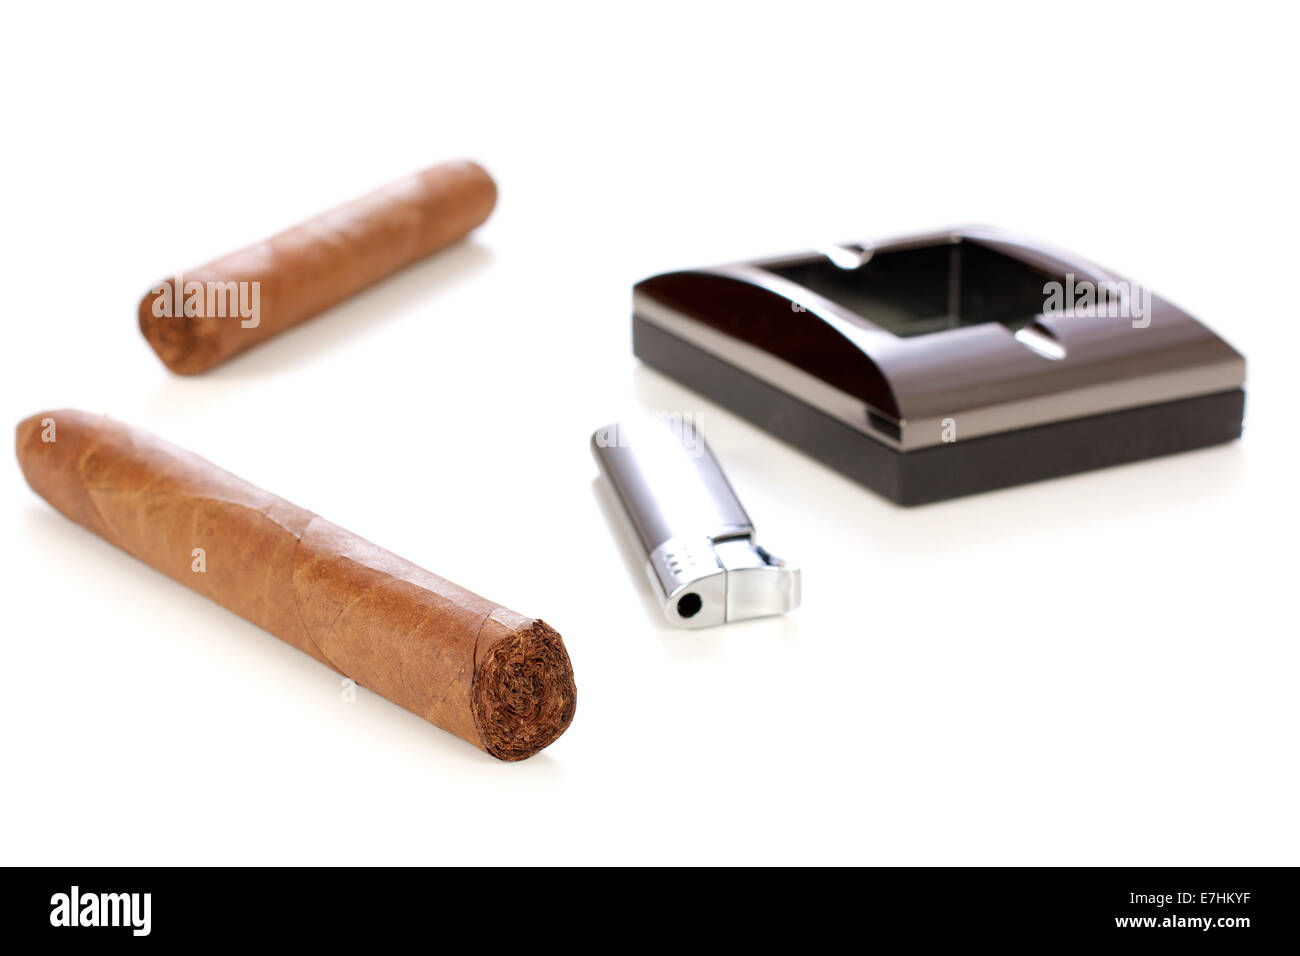 Chiudere metallico, posacenere e accendisigari sigaro cubano isolate su sfondo bianco Foto Stock